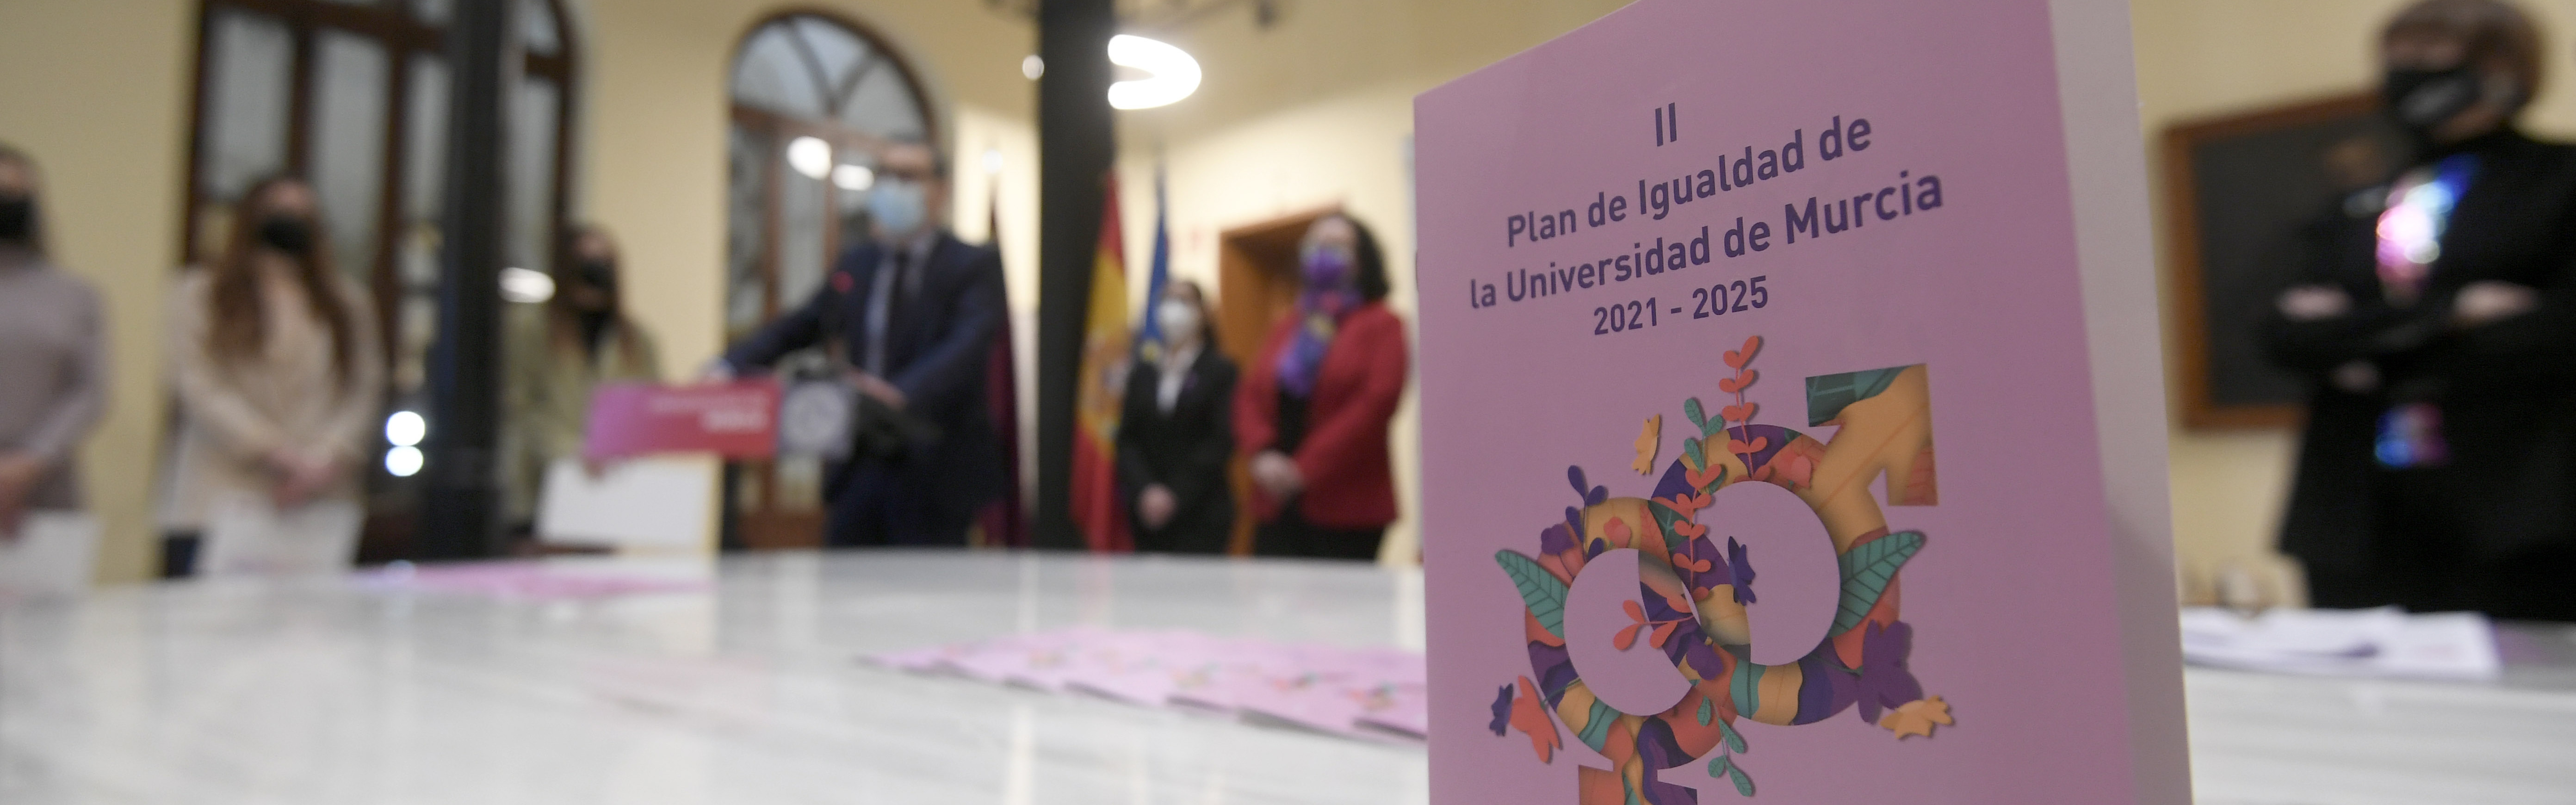 La Universidad de Murcia conmemora el 8M con las mujeres ucranianas en el pensamiento